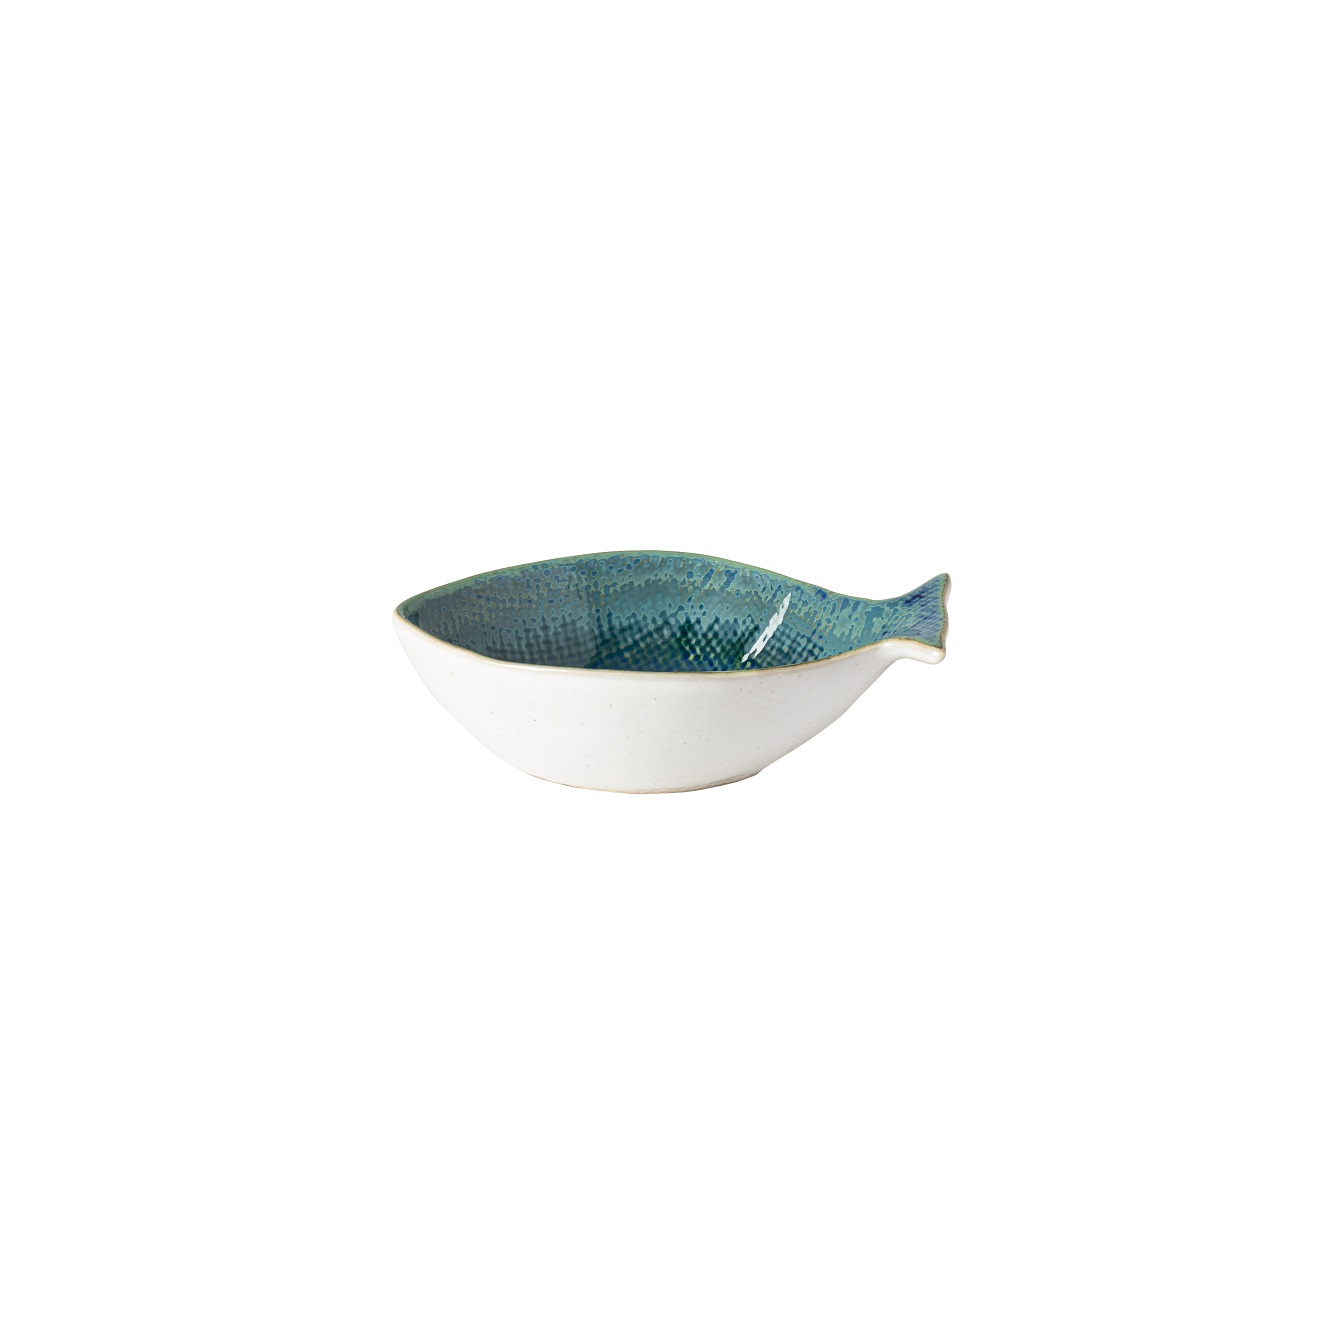 Dori Atlantic Blue Sea Bream Bowl Sml 14cm Gift